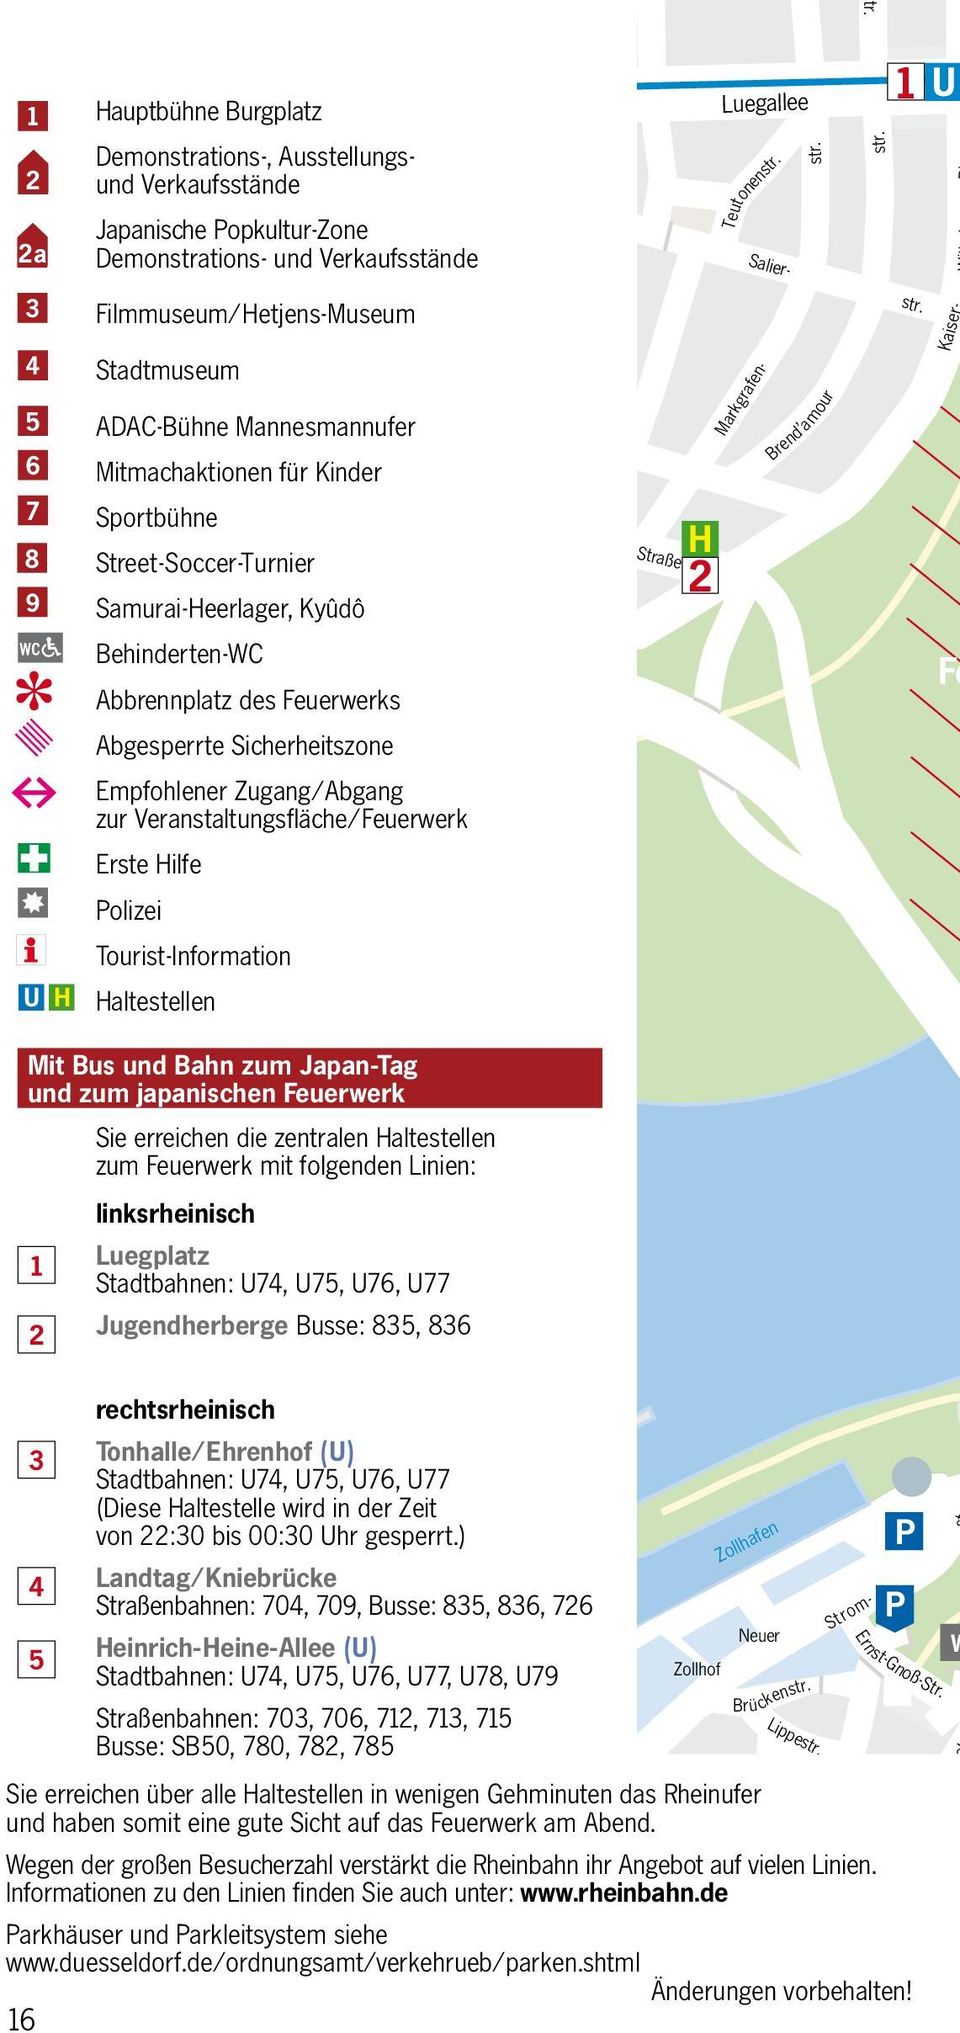 Zugang/Abgang zur Veranstaltungsfläche/Feuerwerk Erste Hilfe olizei Tourist-Information Haltestellen Düsseldorfer Straße H 2 Luegallee Teutonen Salier- Strom- Markgrafen- Brend amour 1 Kaiser Fe Mit